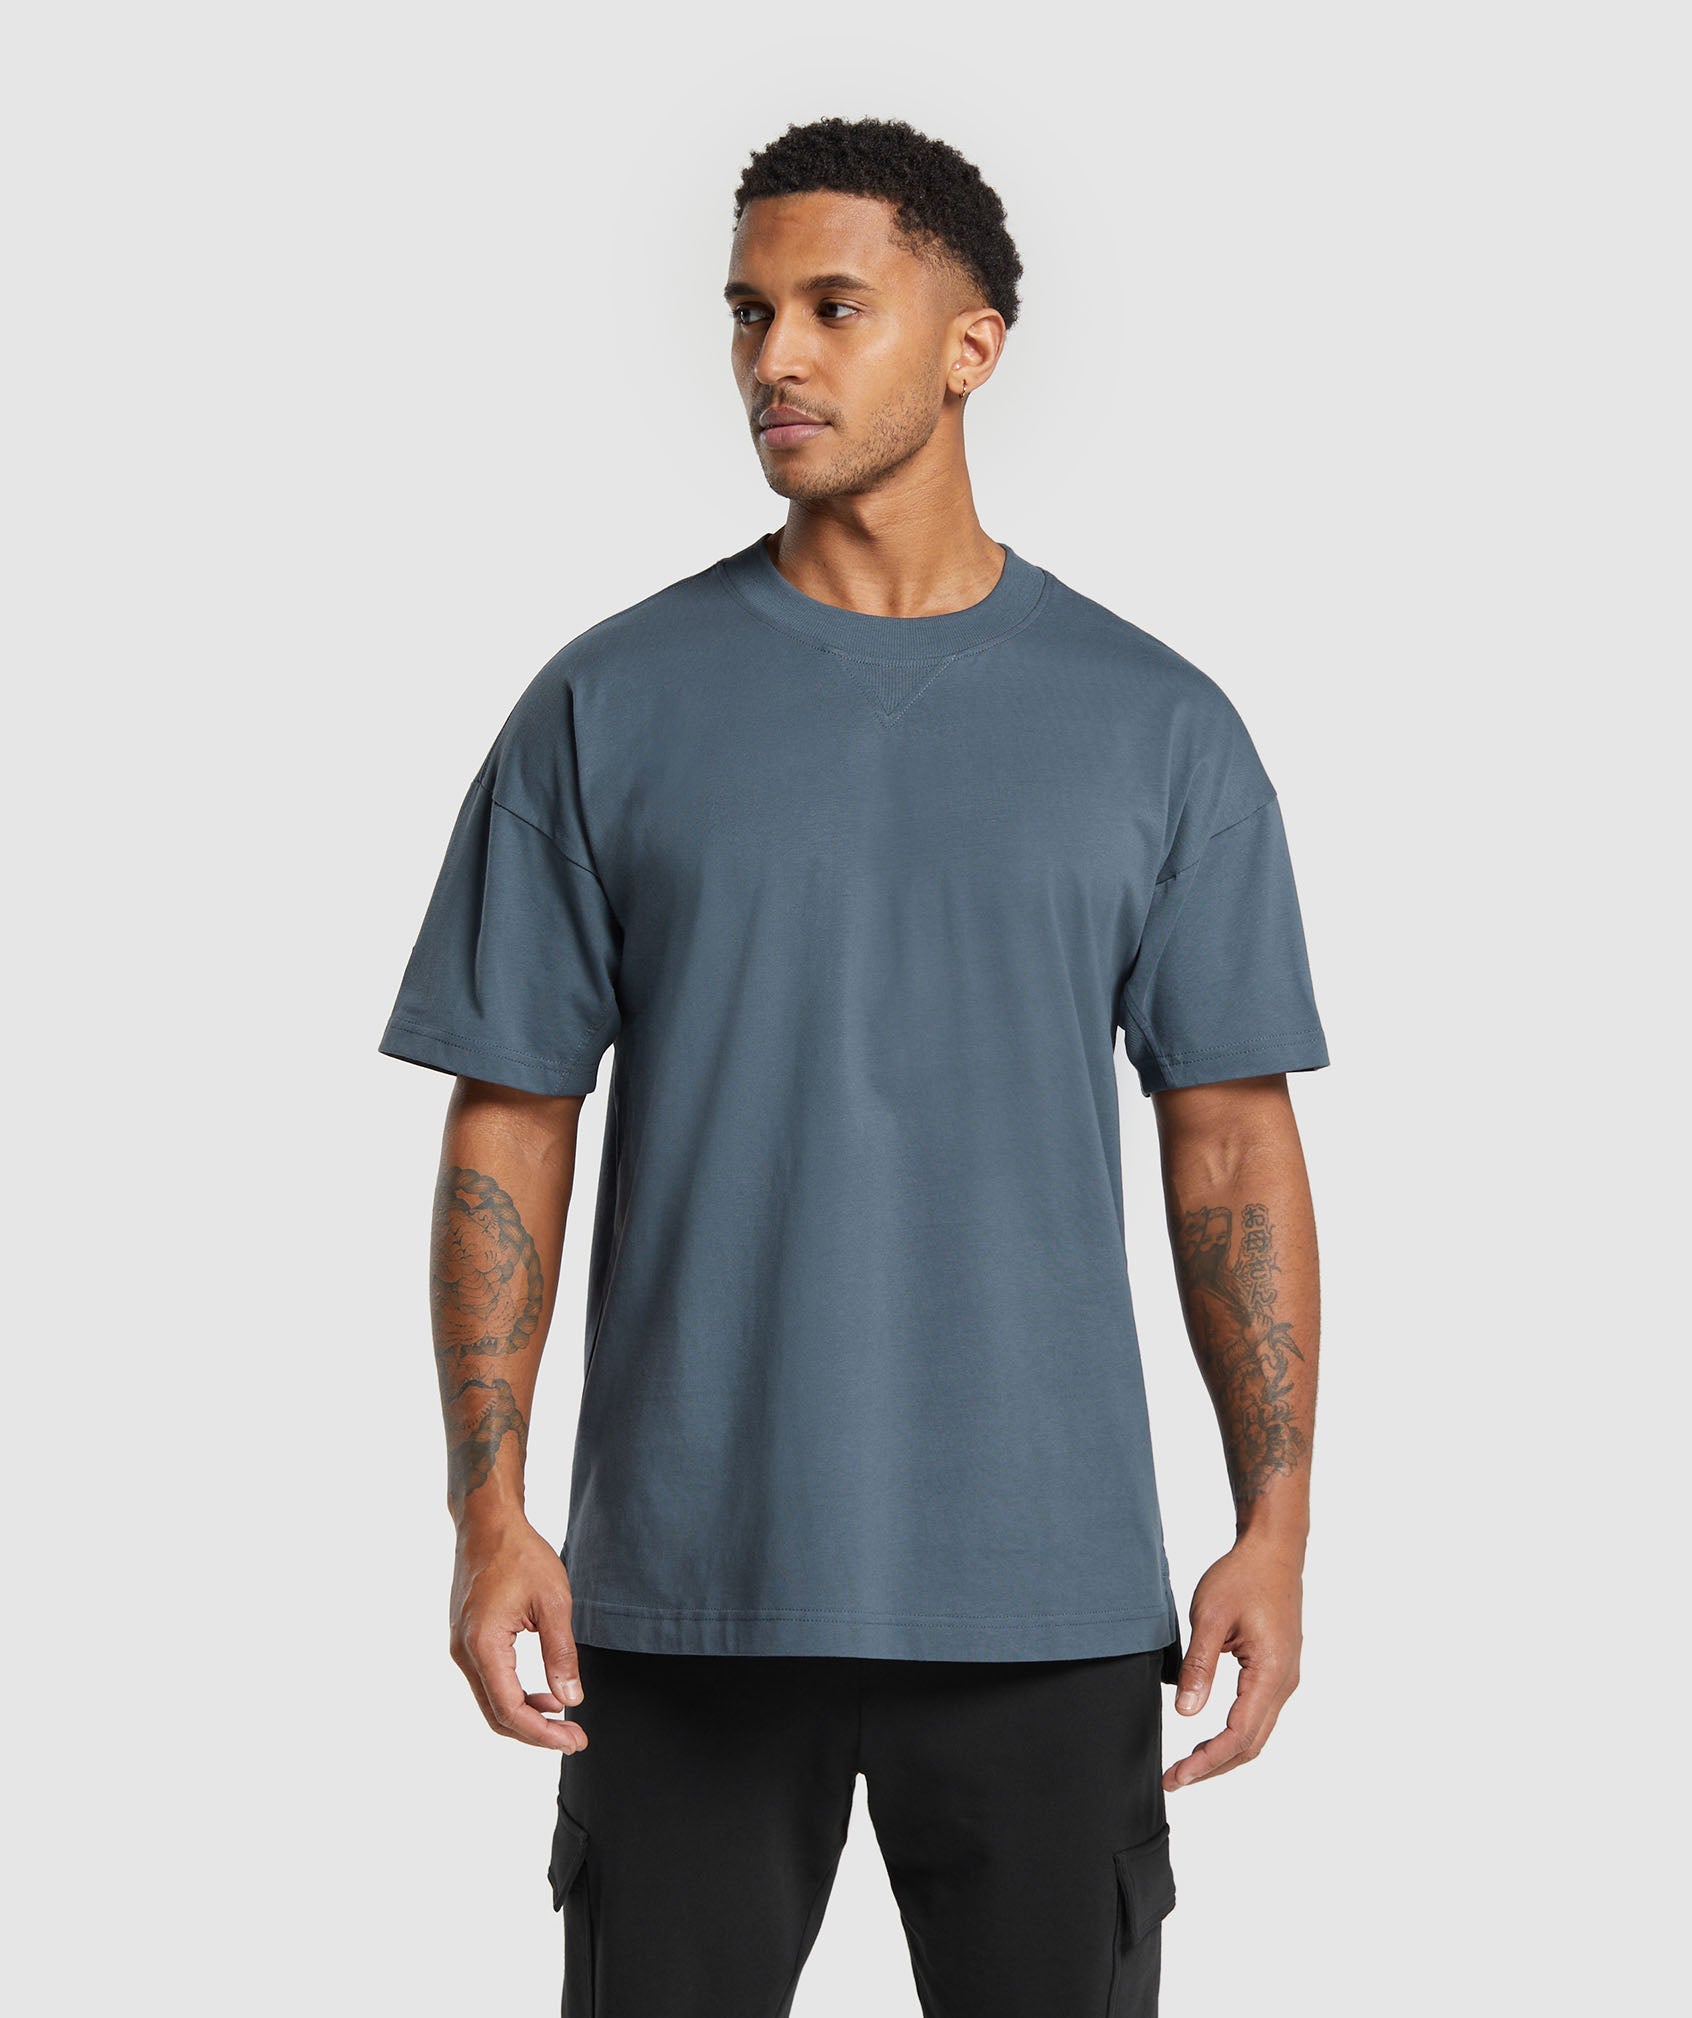 Rest Day Essentials T-Shirt in Titanium Blue - view 1